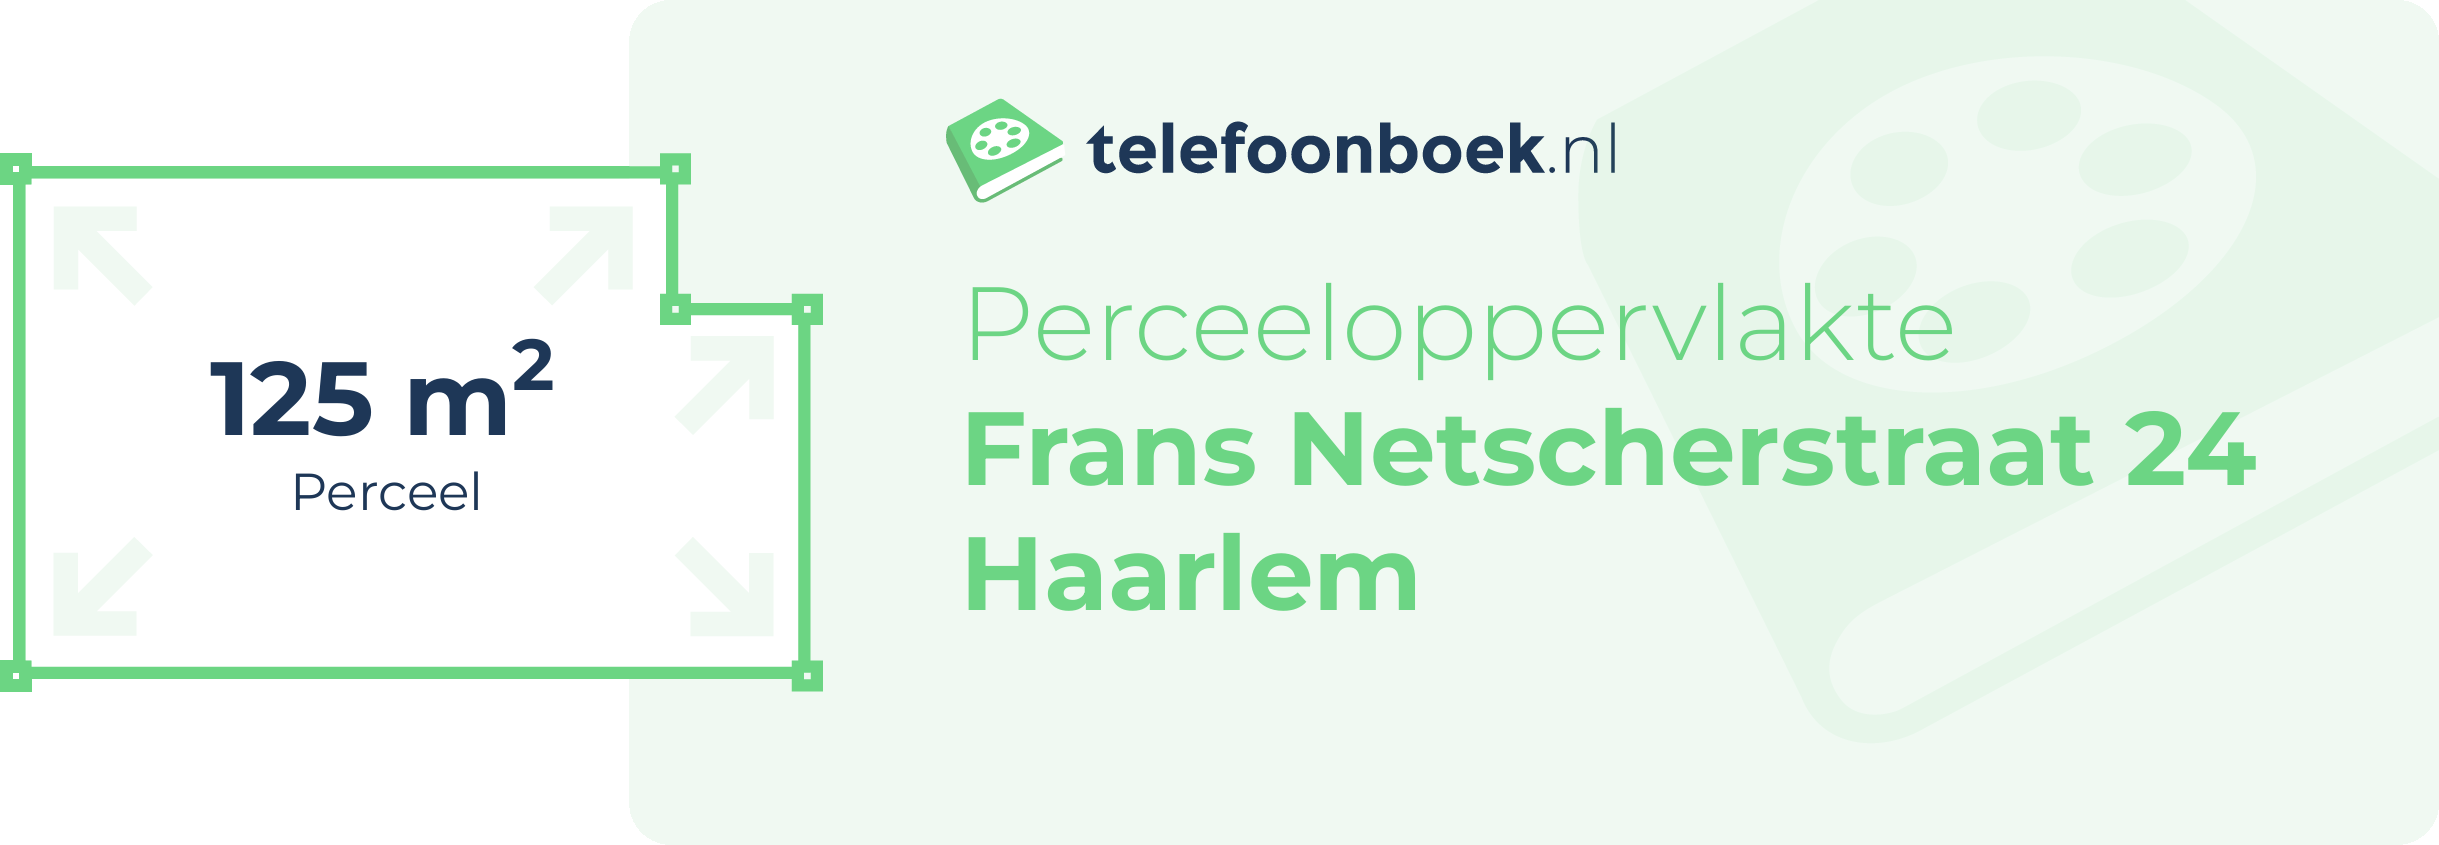 Perceeloppervlakte Frans Netscherstraat 24 Haarlem